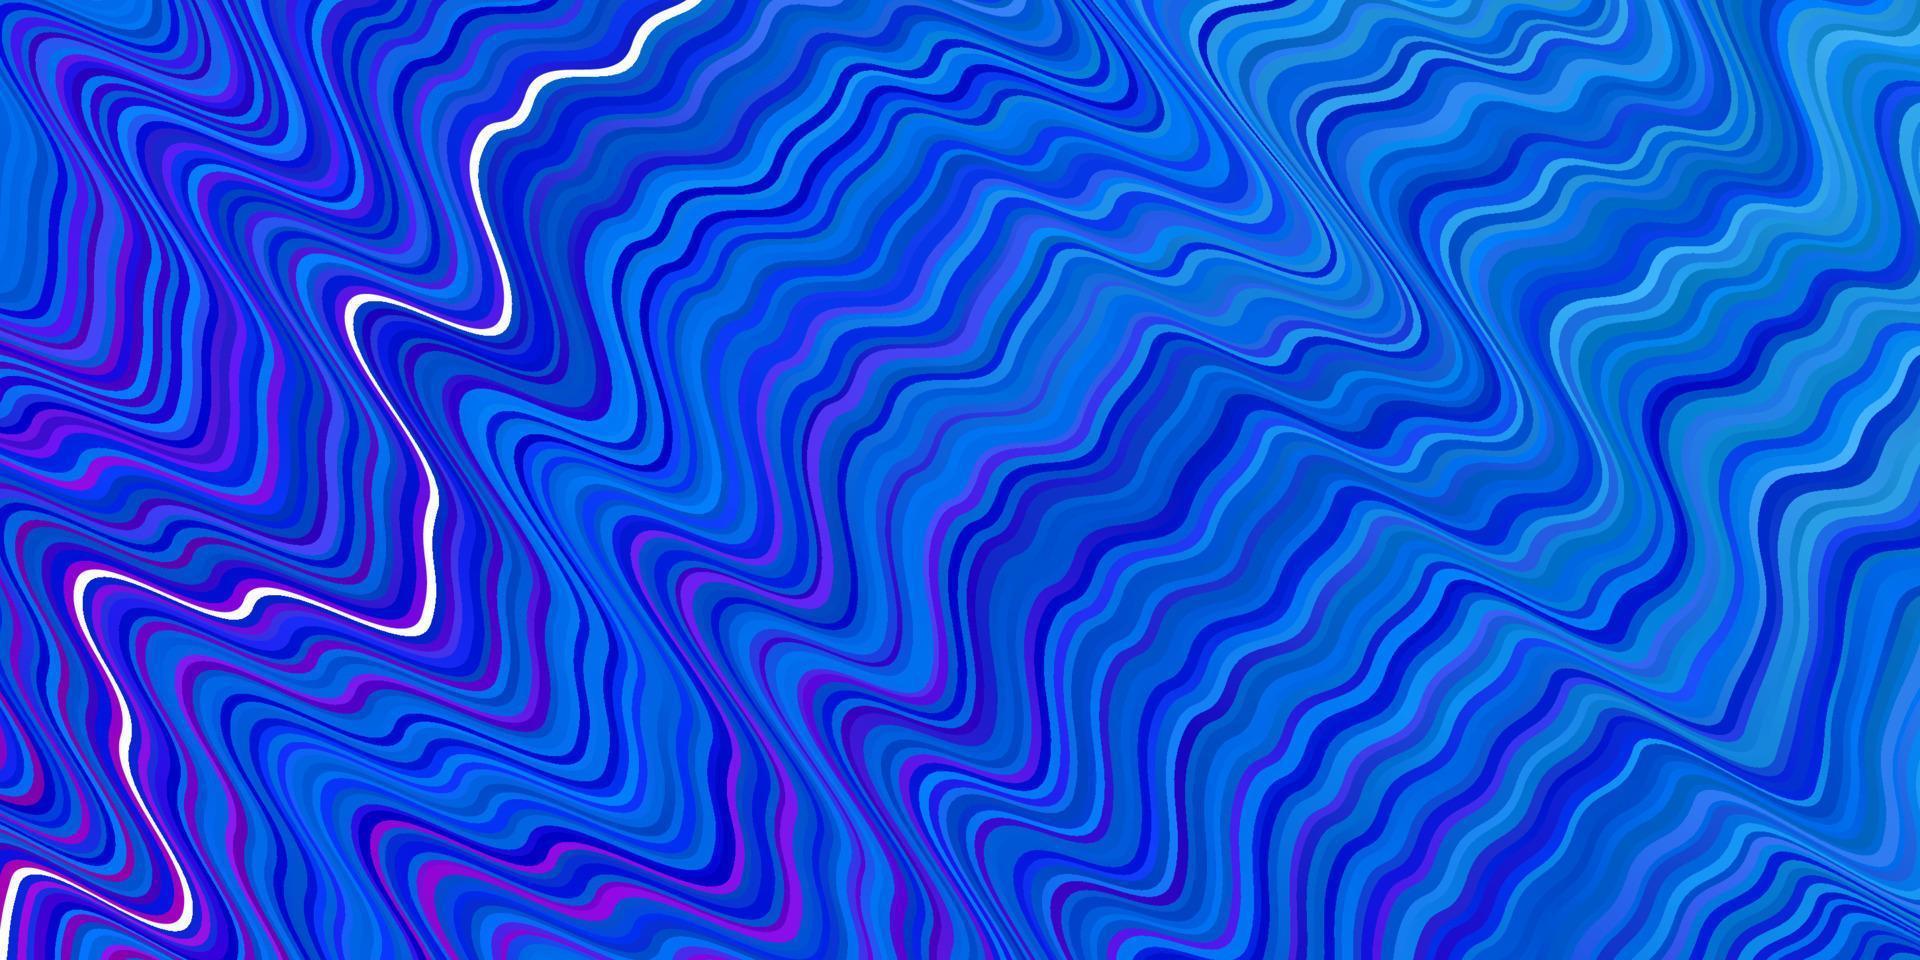 ljusrosa, blå vektormönster med kurvor. vektor